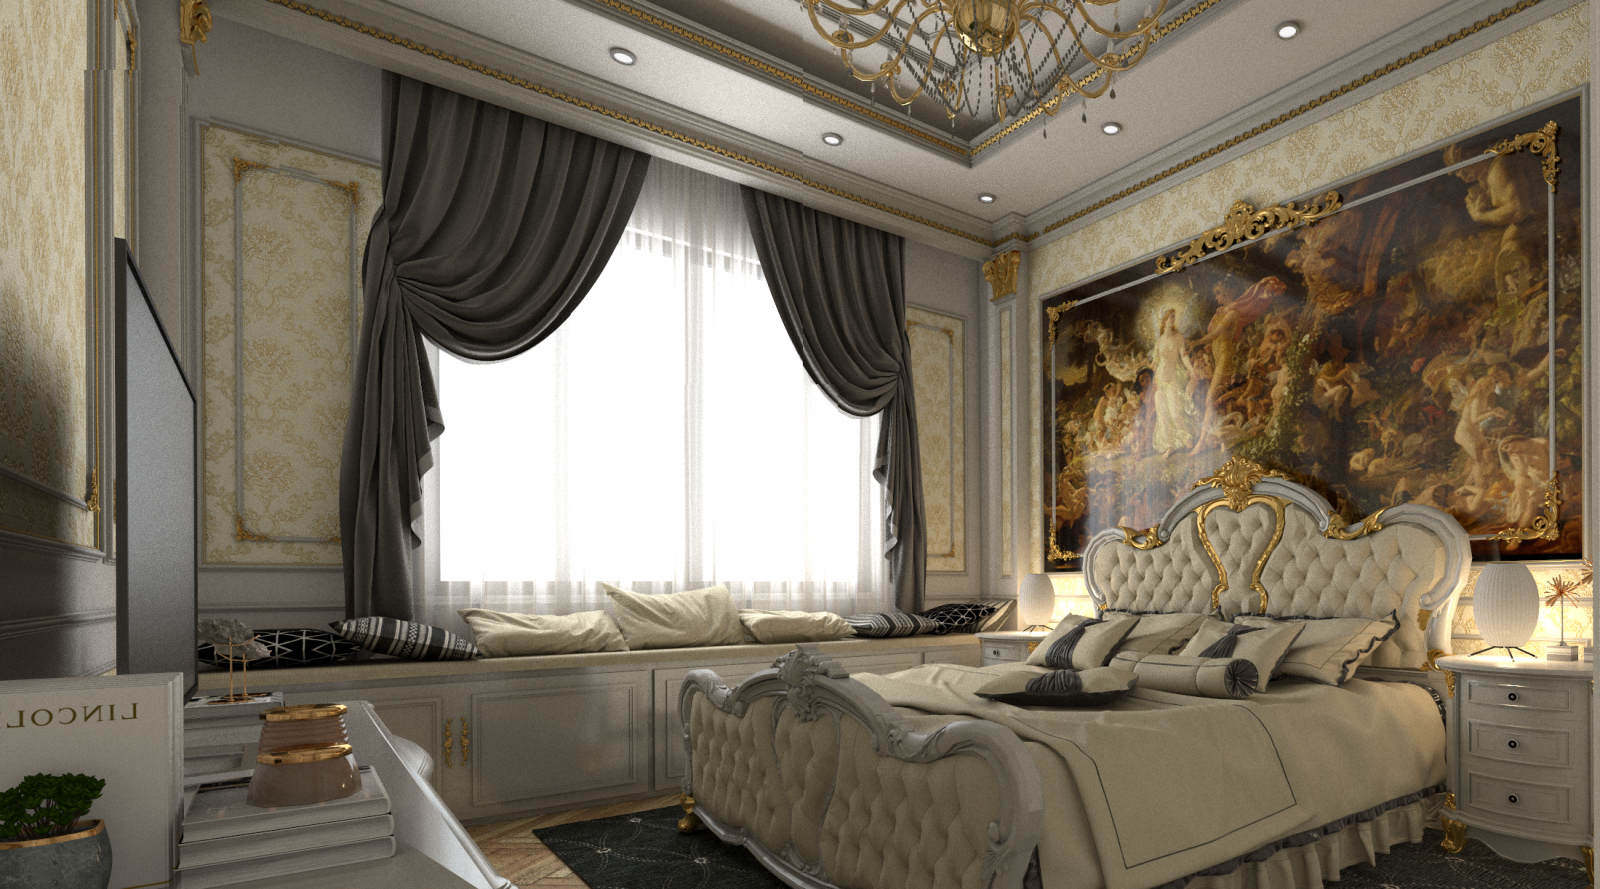 Thiết kế nội thất phòng ngủ sang trọng như phòng ngủ quý tộc